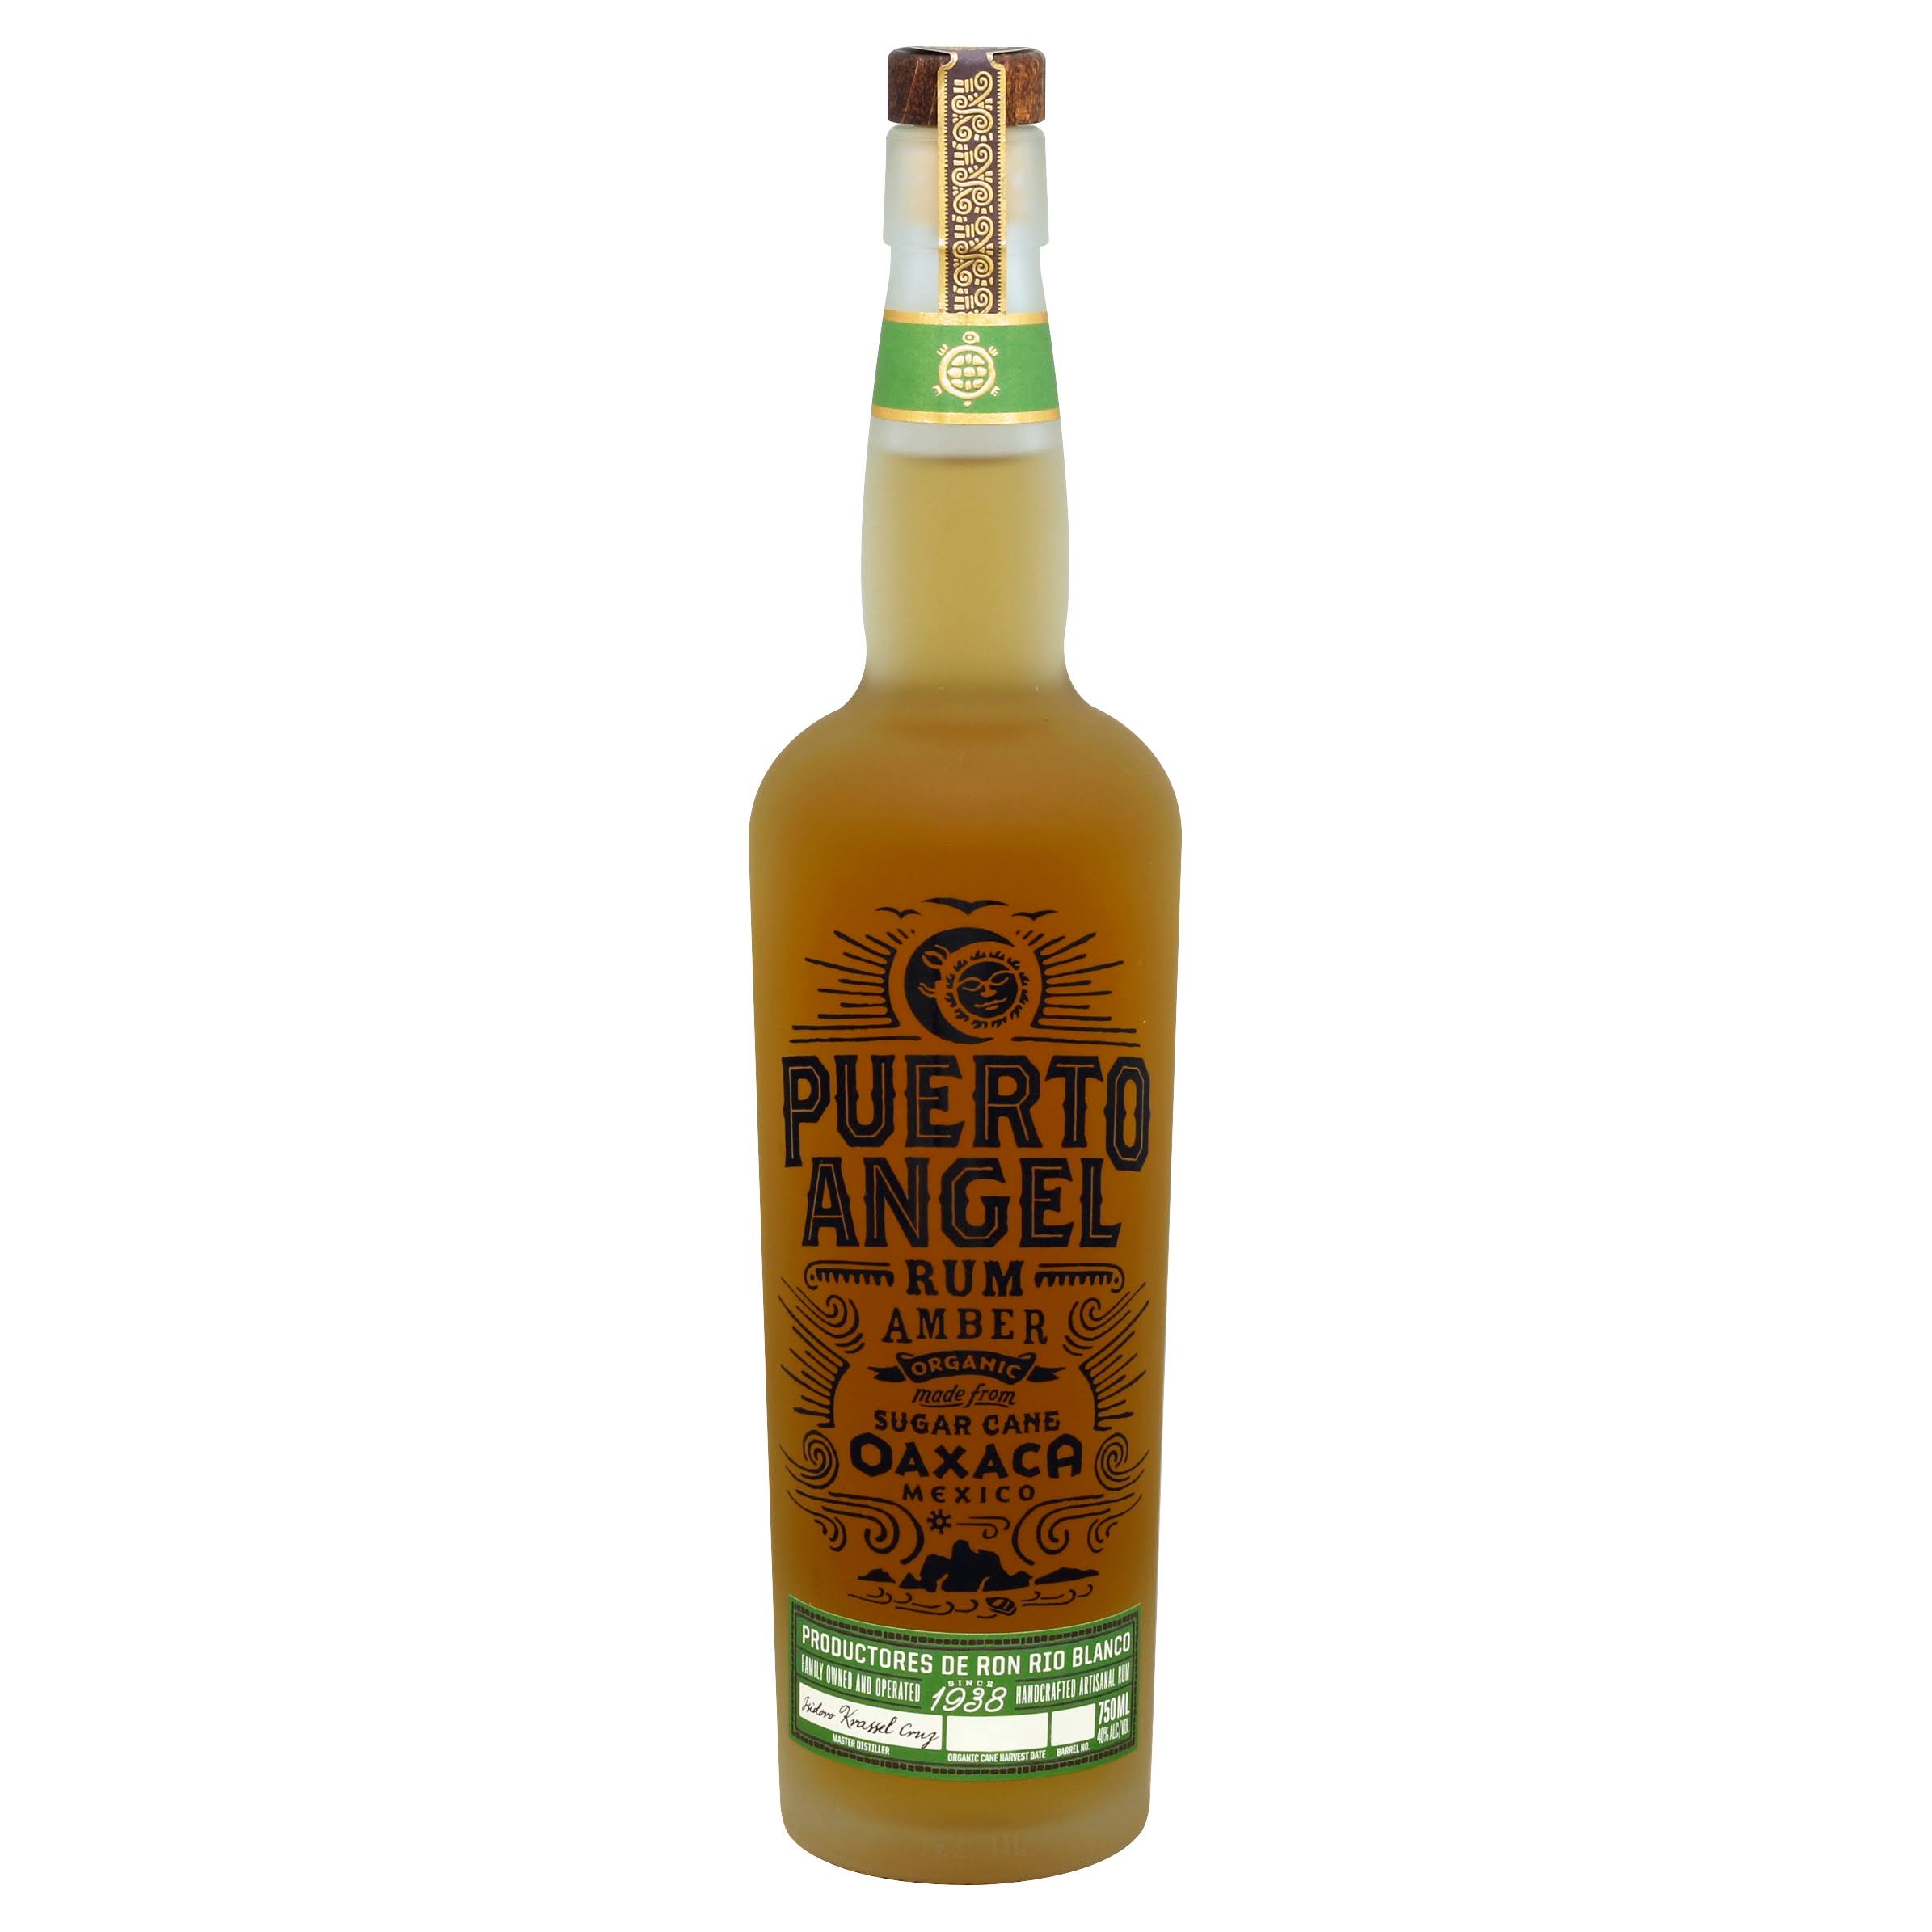 Puerto Angel Rum, Amber, Organic - 750 ml